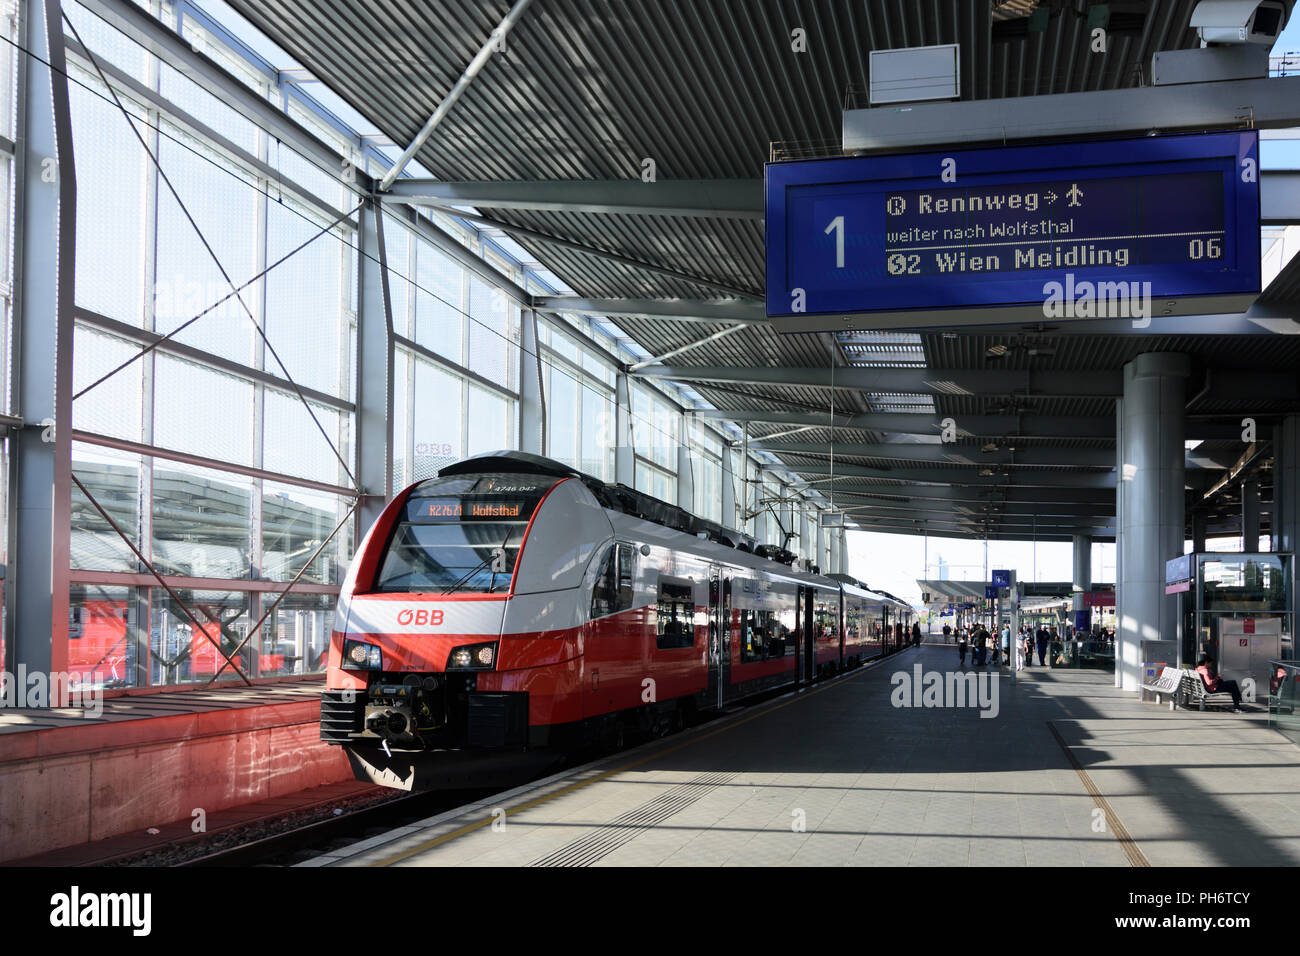 Wien, Wien: Bahnhof der ÖBB Praterstern, Zug Cityjet, 02. Leopoldstadt, Wien,  Österreich Stockfotografie - Alamy